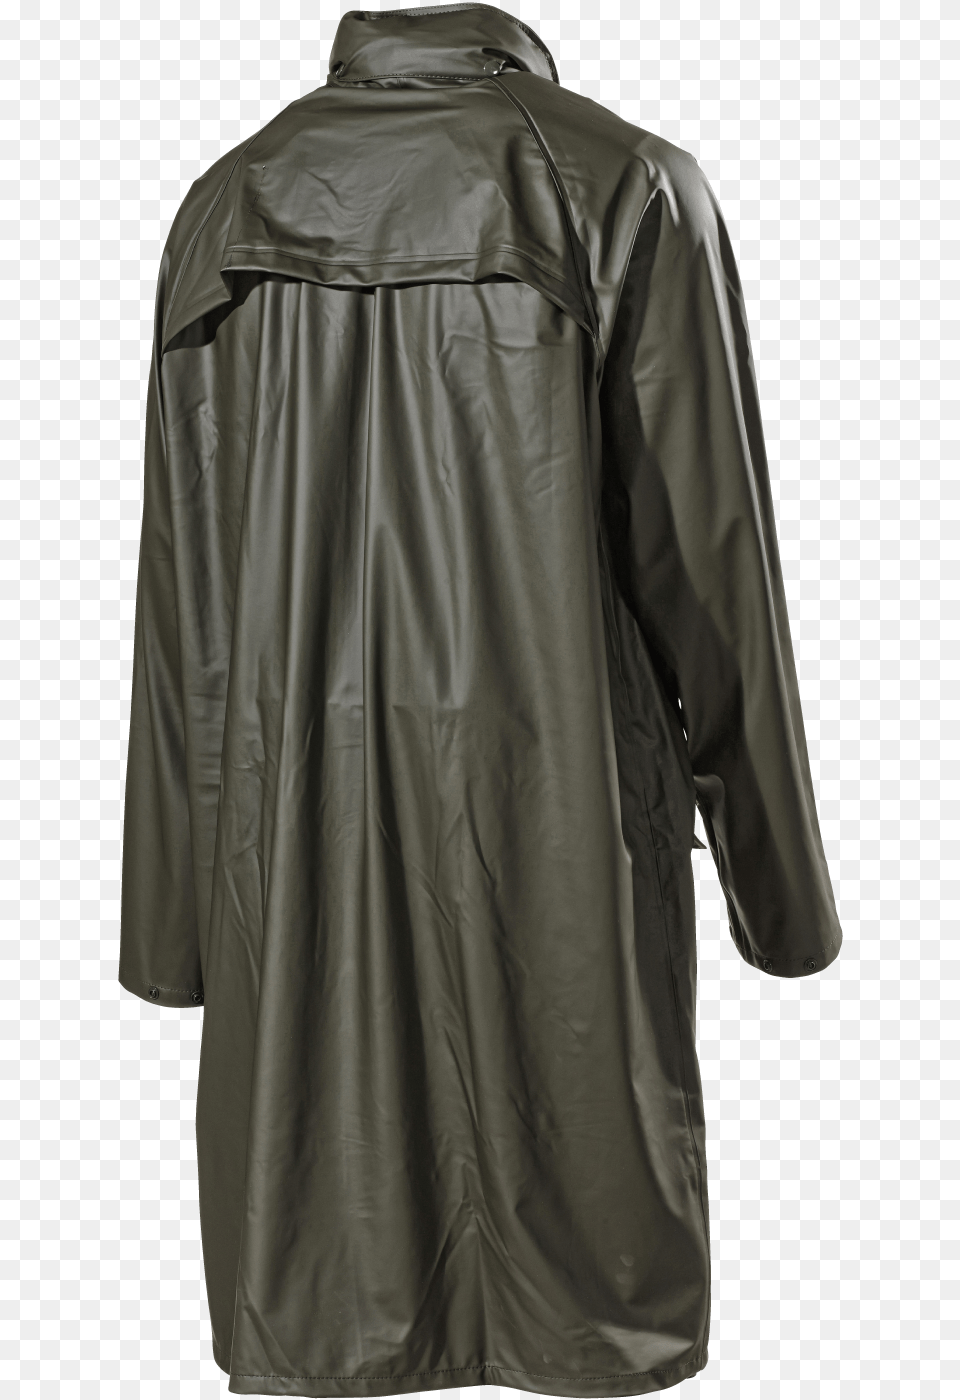 Raincoat, Clothing, Coat, Jacket Png